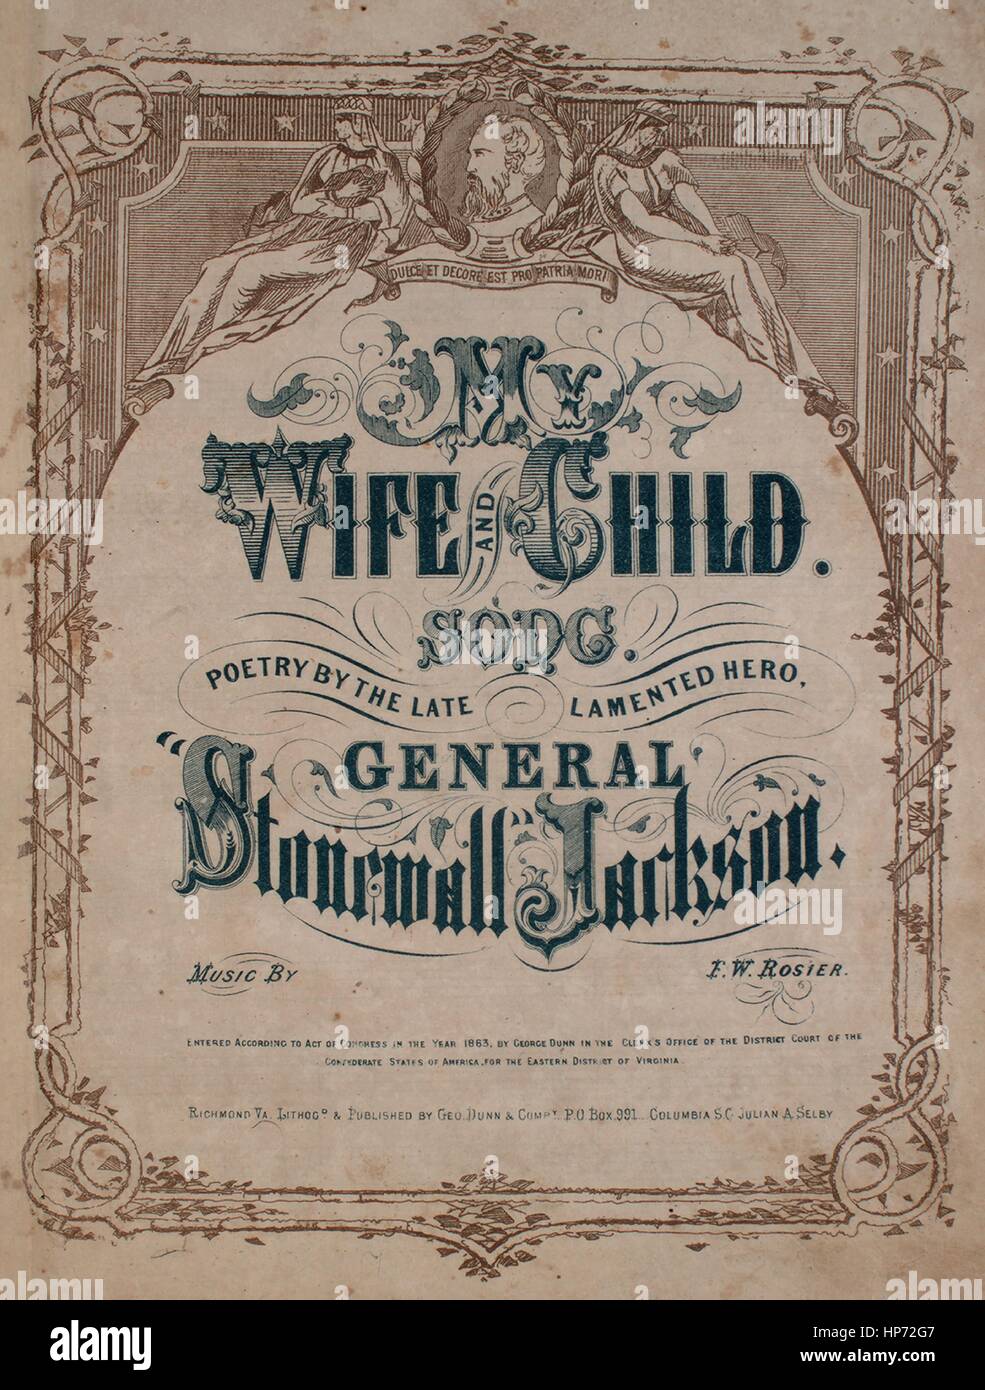 Sheet Music image de couverture de la chanson 'Ma femme et enfant chanson',  avec une œuvre originale 'Lecture notes Poèmes par le regretté héros,  Général Stonewall Jackson Musique par FW Rosier', 1863.